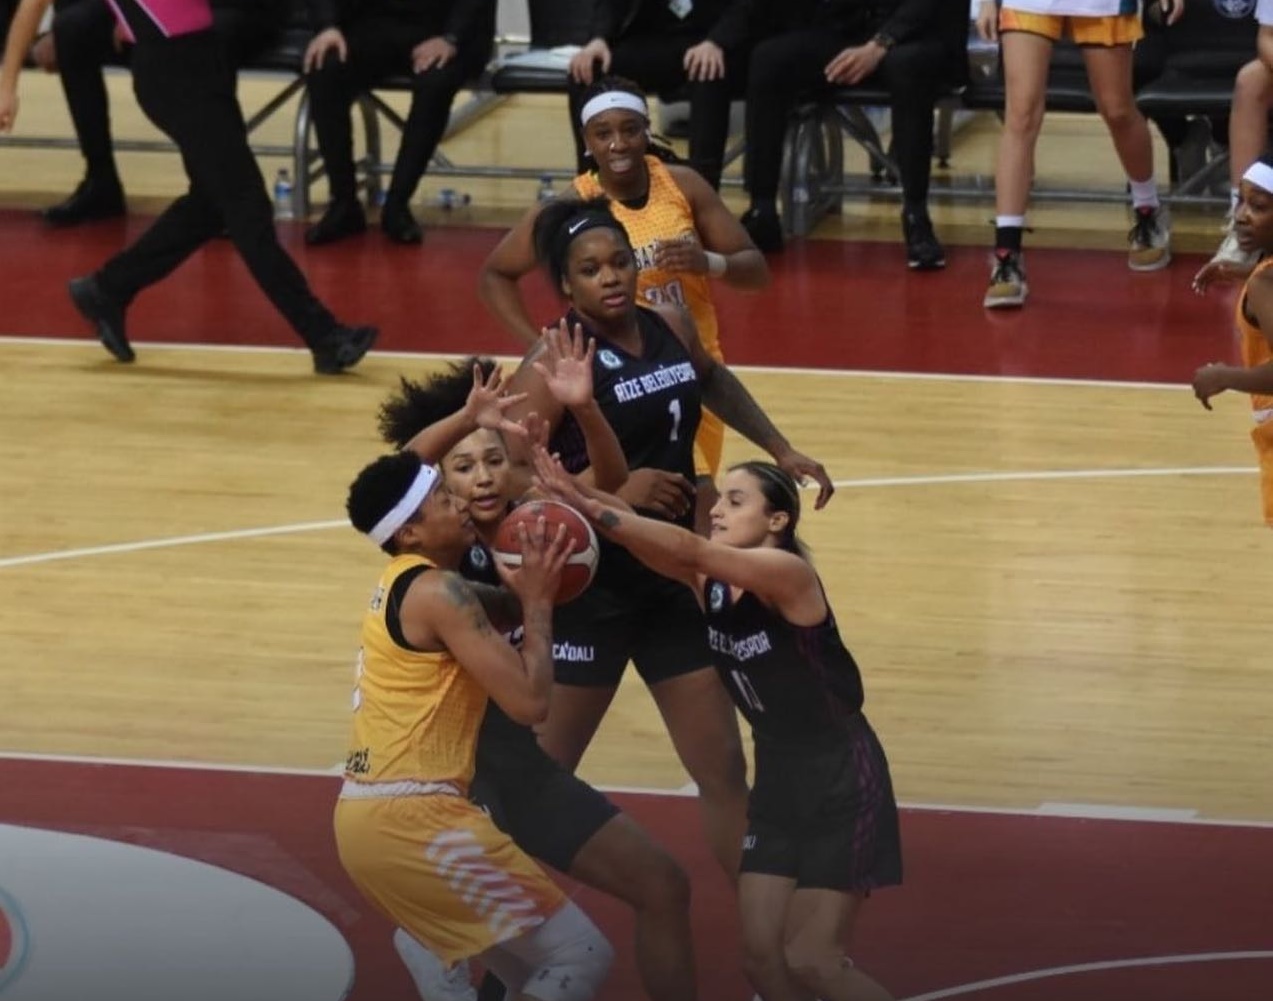 Rize Belediyesi, Melikgazi Kayseri Basketbol’a 80-78 Mağlup Oldu